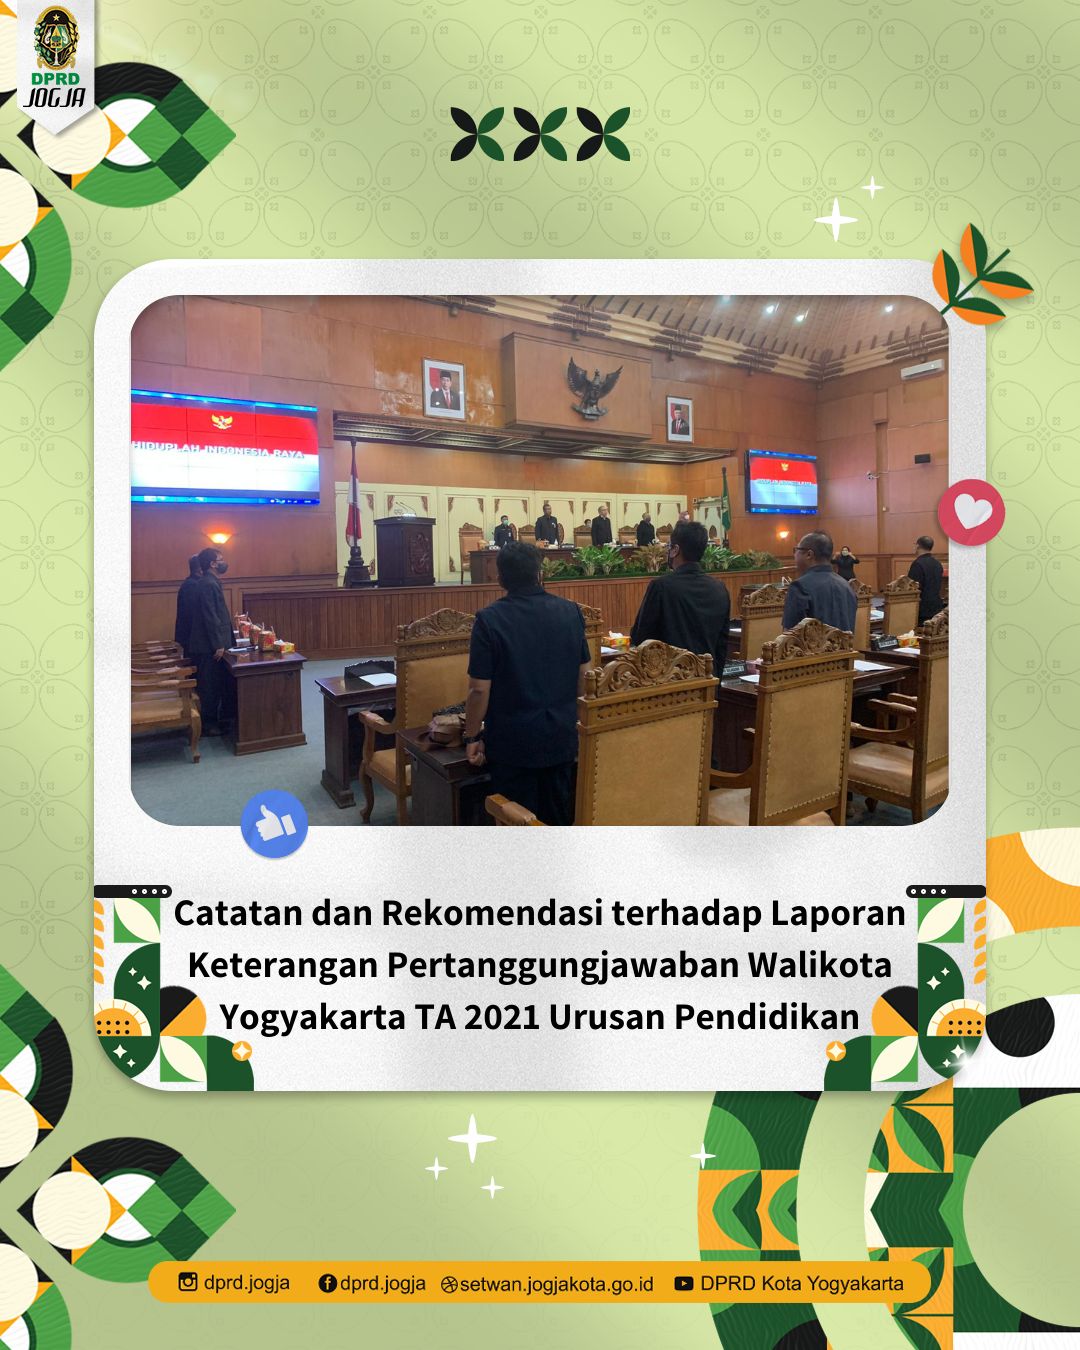 Catatan dan Rekomendasi terhadap Laporan Keterangan Pertanggungjawaban Walikota Yogyakarta TA 2021 Urusan Pendidikan